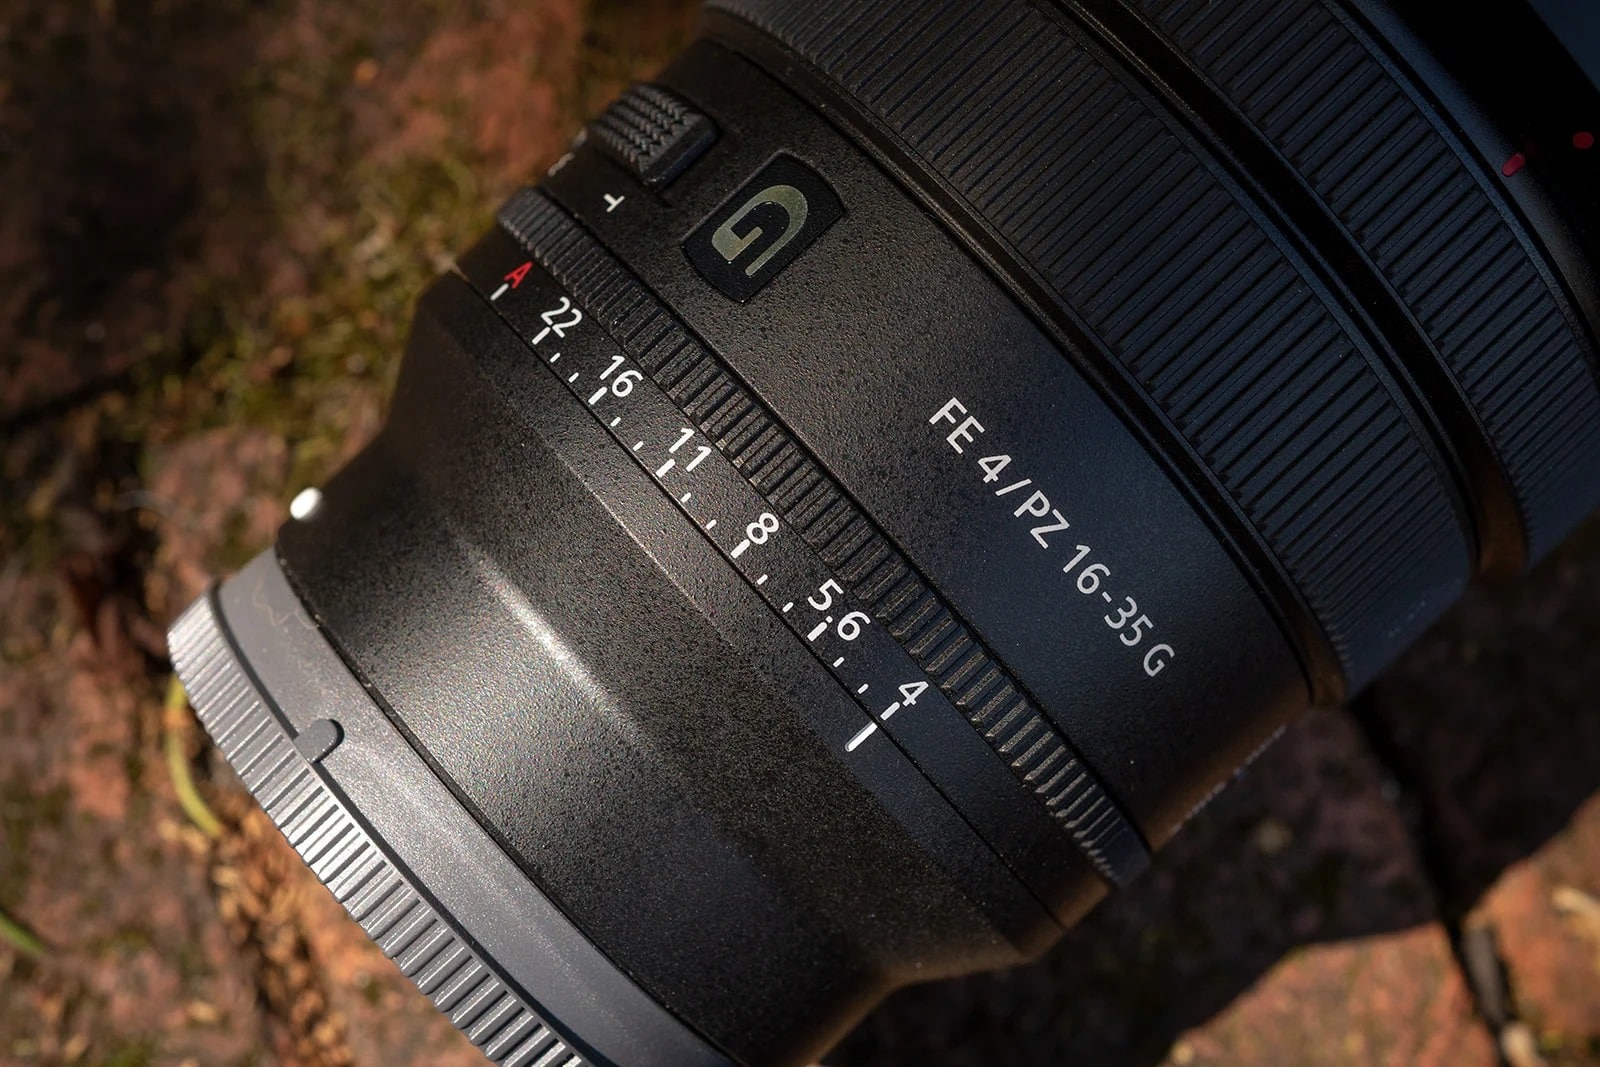 Ống kính Sony FE PZ 16-35mm F4 G